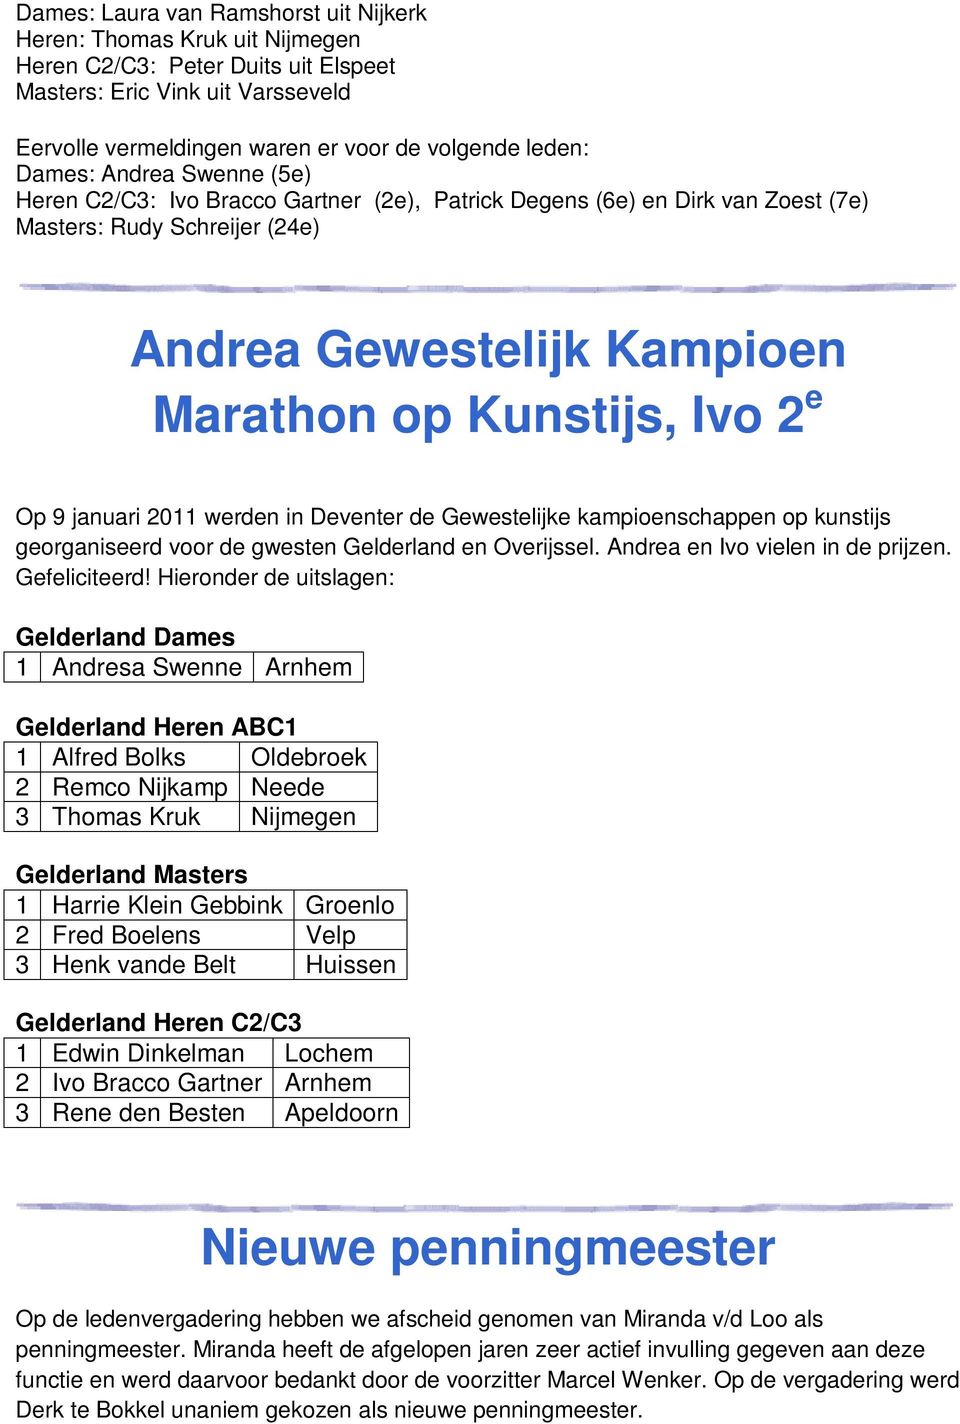 januari 2011 werden in Deventer de Gewestelijke kampioenschappen op kunstijs georganiseerd voor de gwesten Gelderland en Overijssel. Andrea en Ivo vielen in de prijzen. Gefeliciteerd!